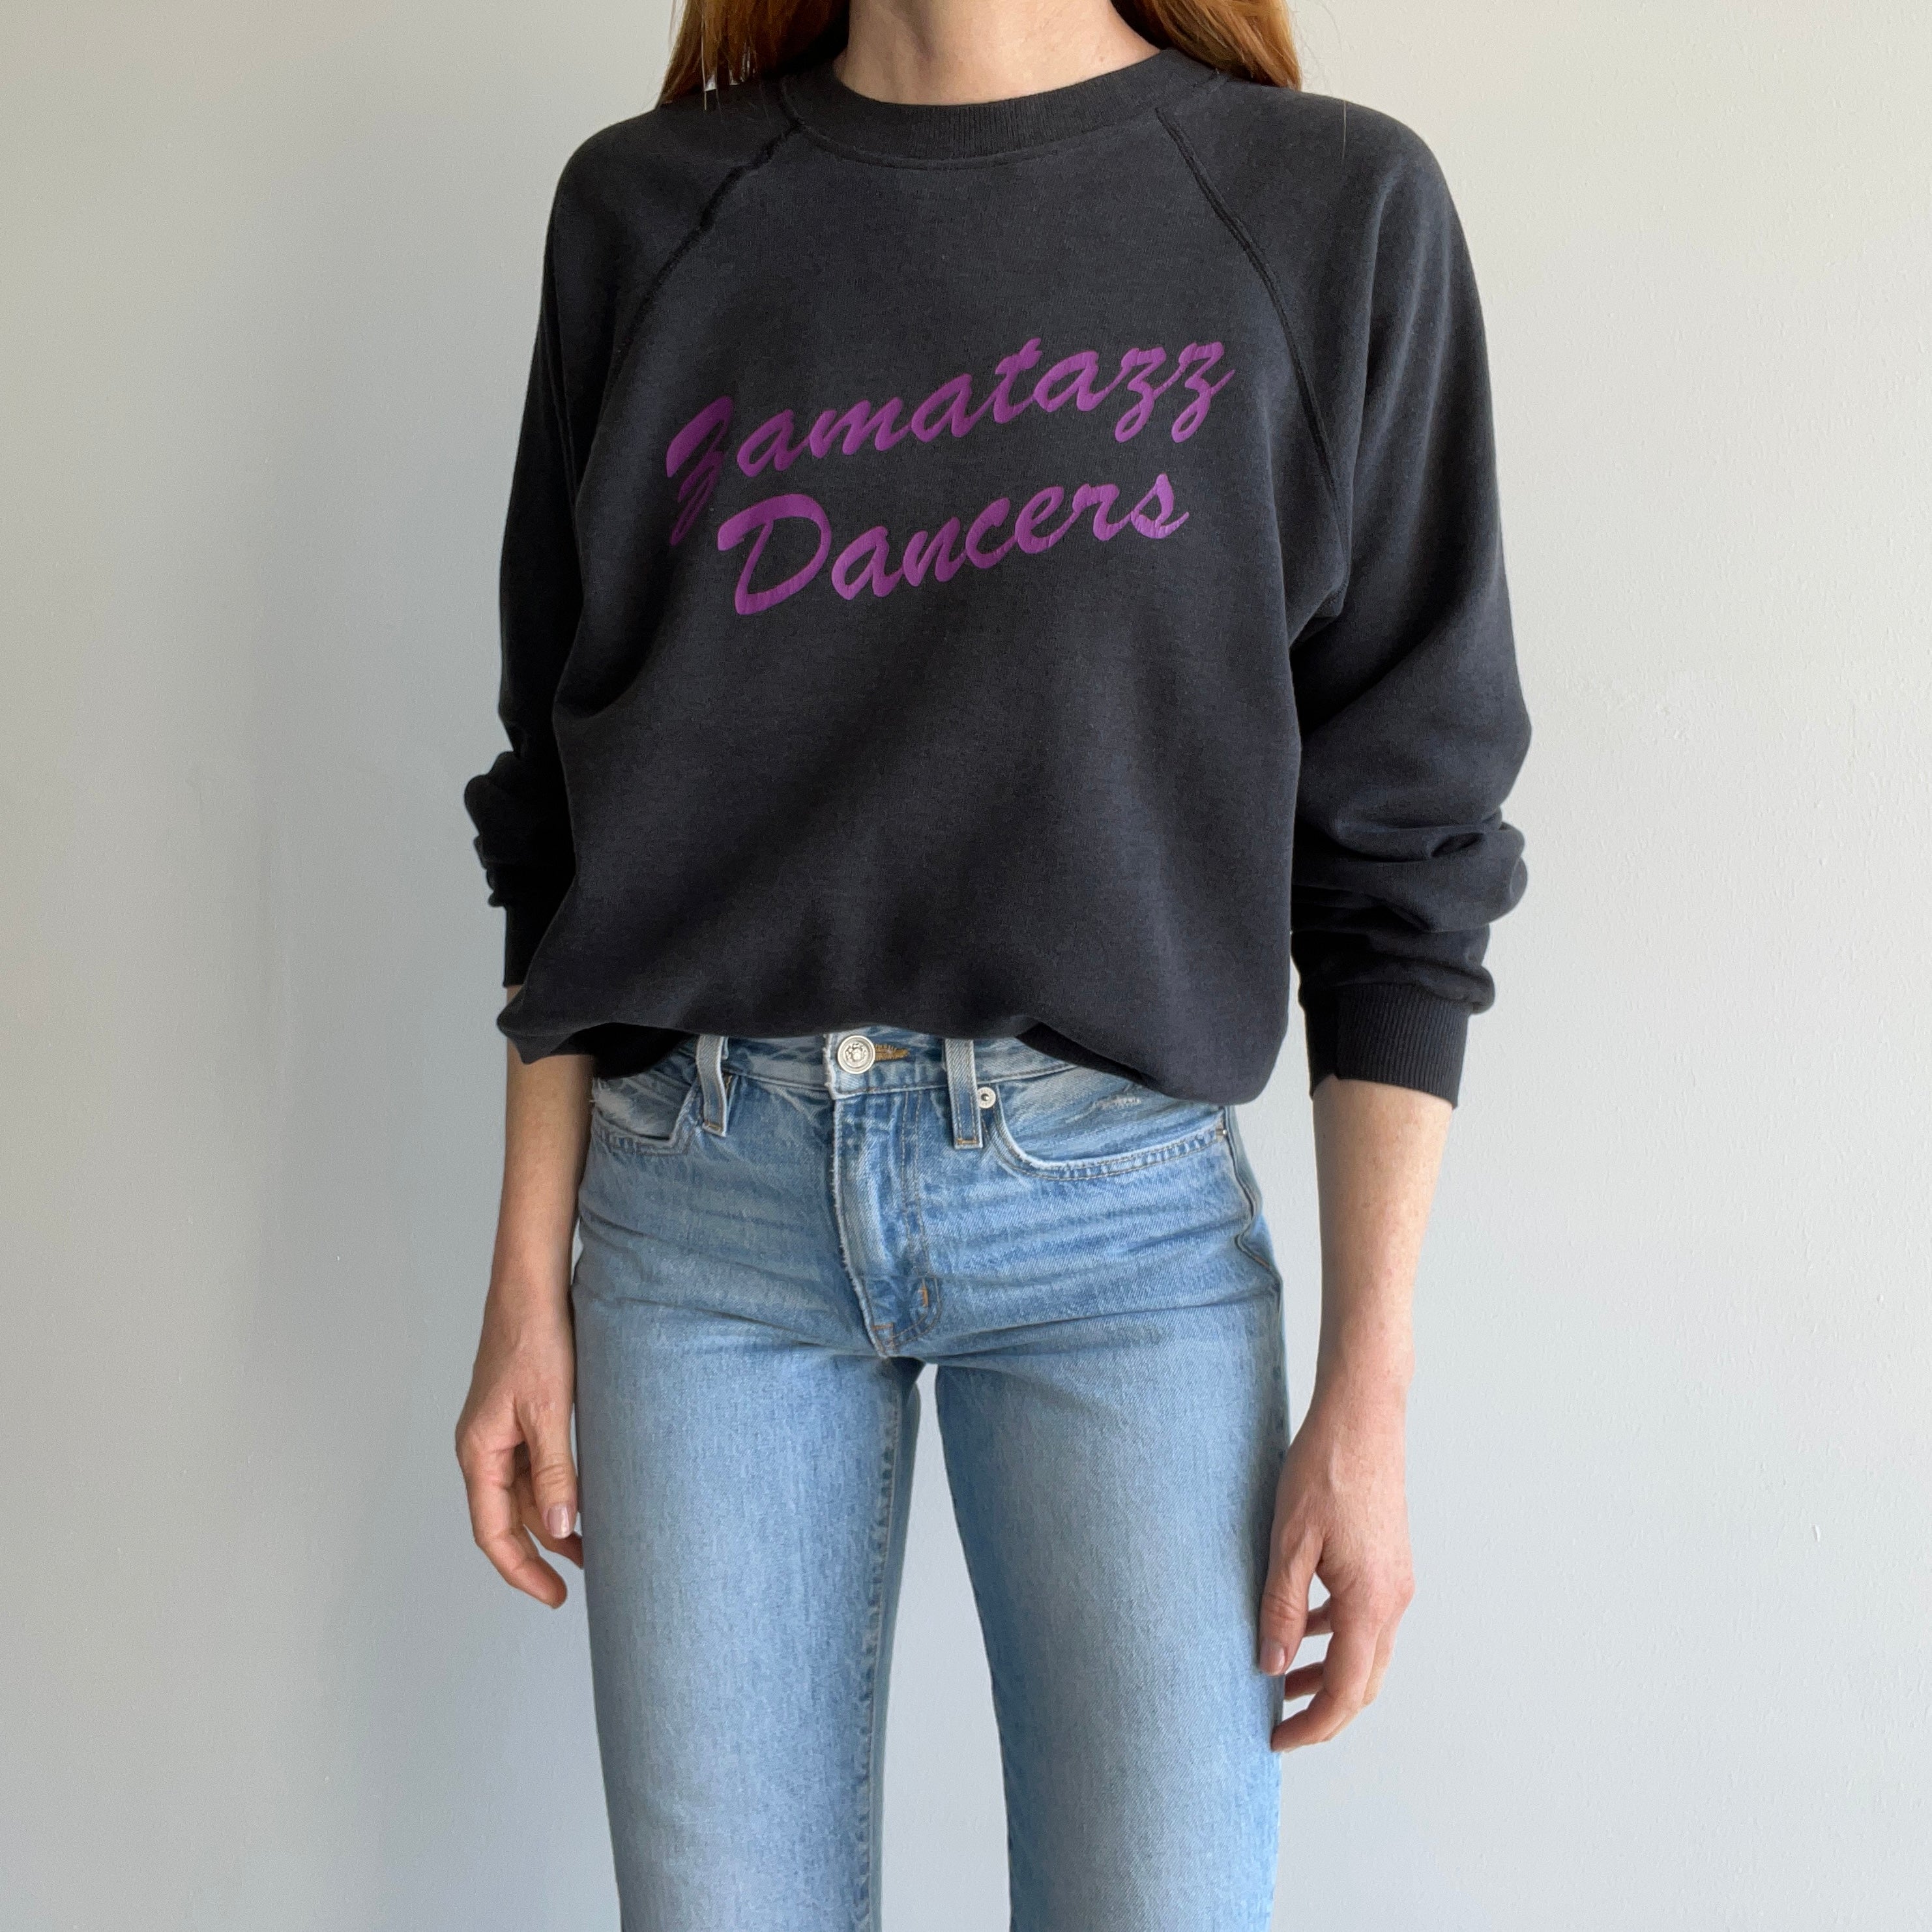 1980s Fanmatazz Bamatazz Ramatazz ??? Dancers Sweatshirt